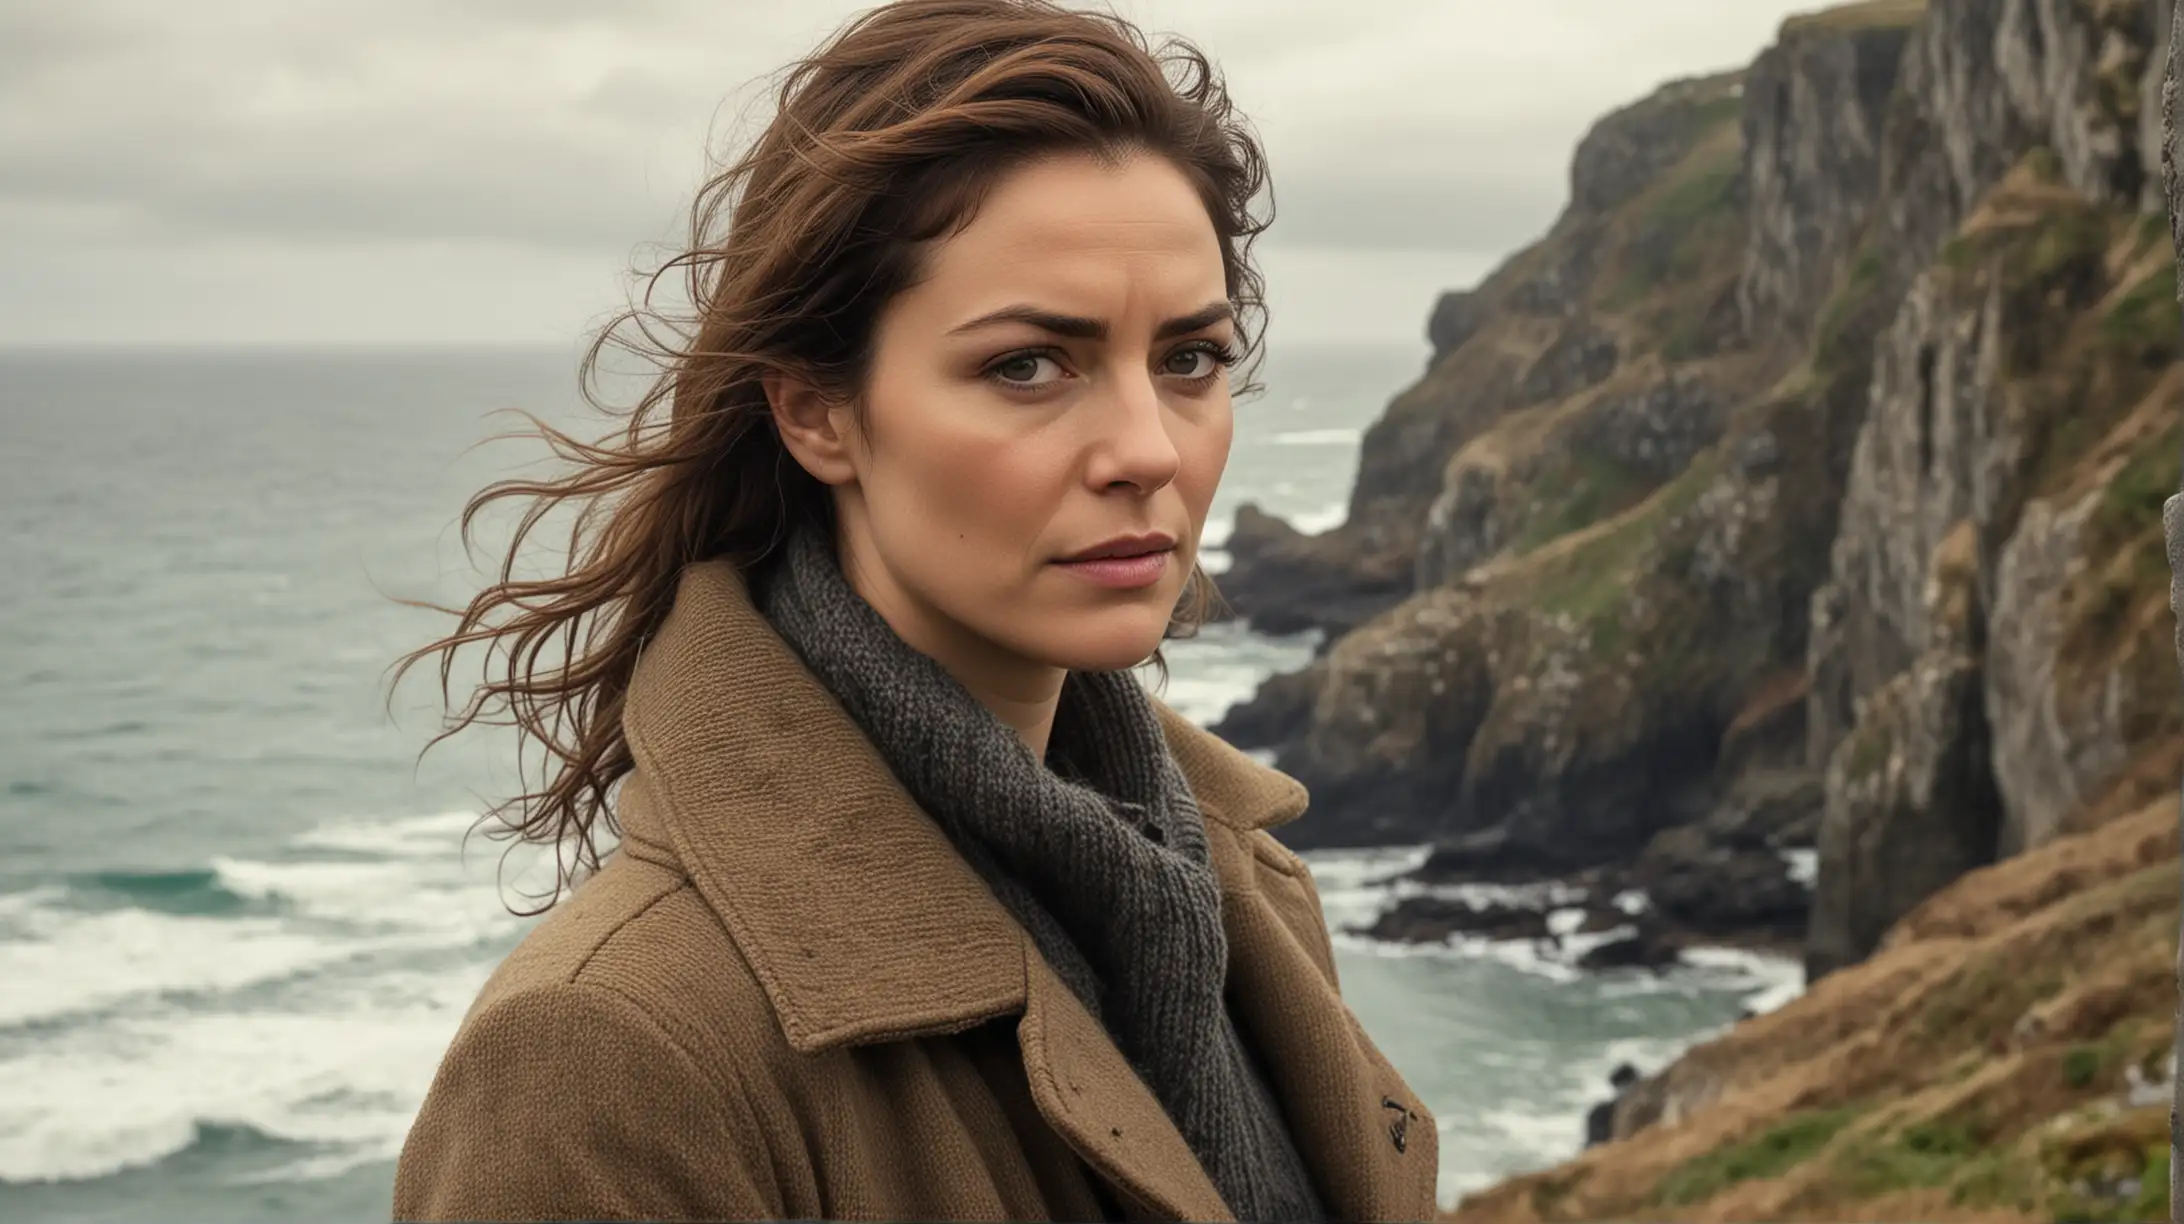 Resilient Detective Cora Contemplates at Cliffs Edge